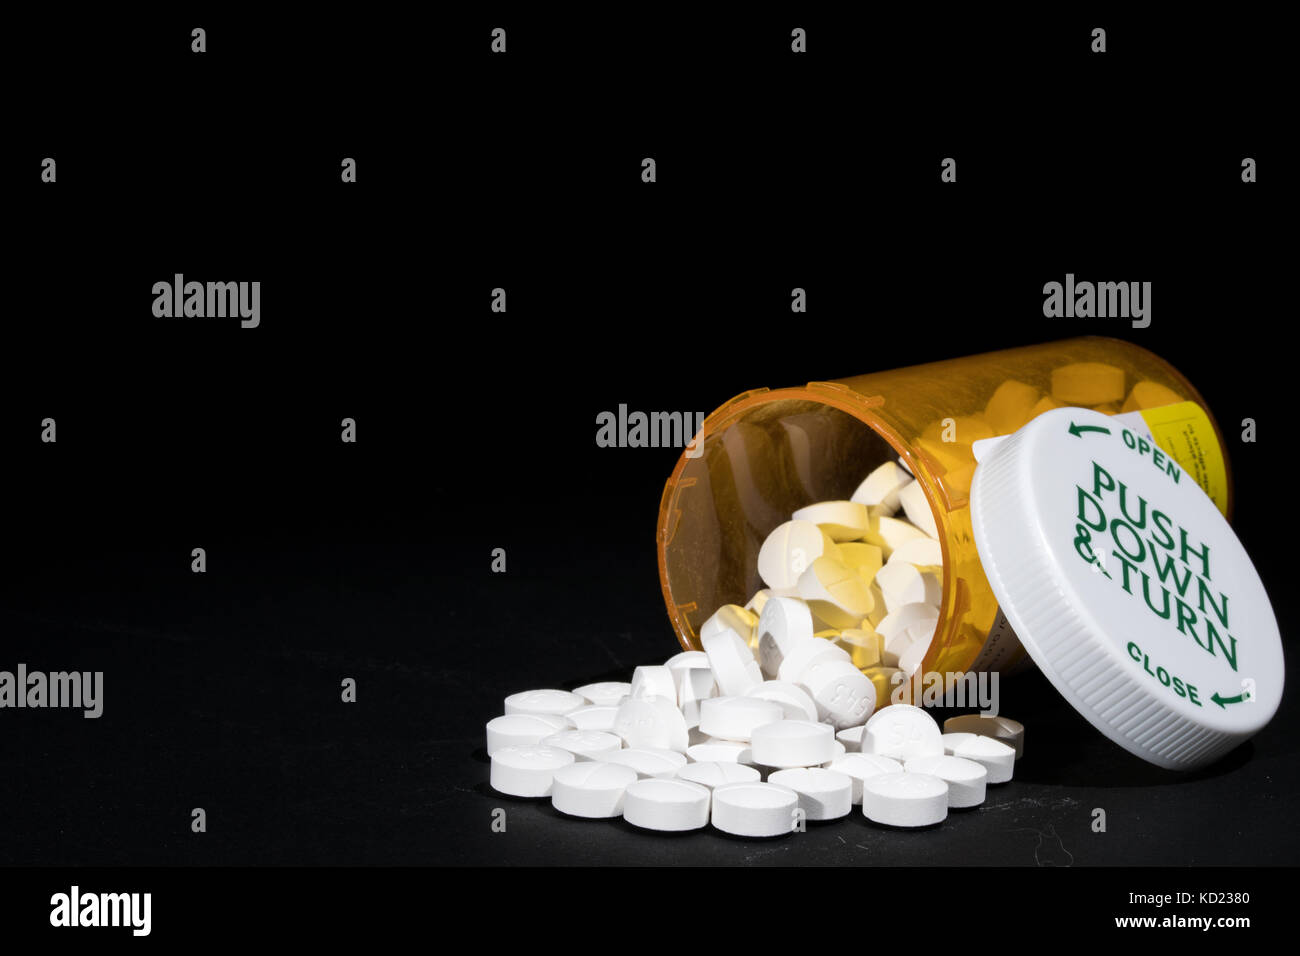 Il potente prescrizione ossicodone oppioide è critica per una severa gestione del dolore, ma prescritto con cautela per paura di abuso e di dipendenza. Foto Stock